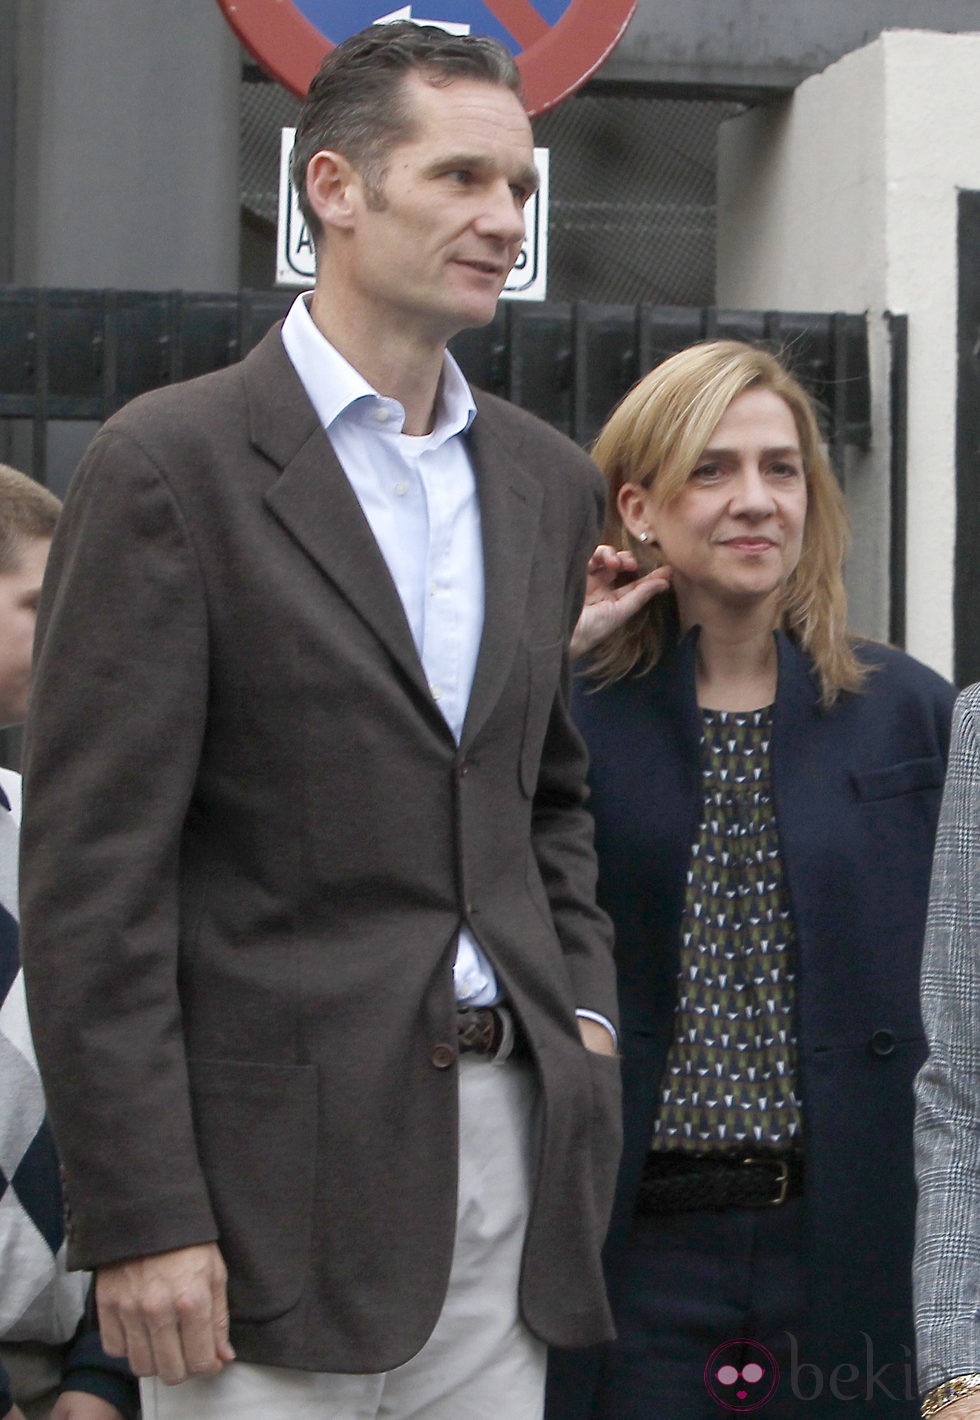 La Infanta Cristina e Iñaki Urdangarín visitan al Rey tras su operación de cadera